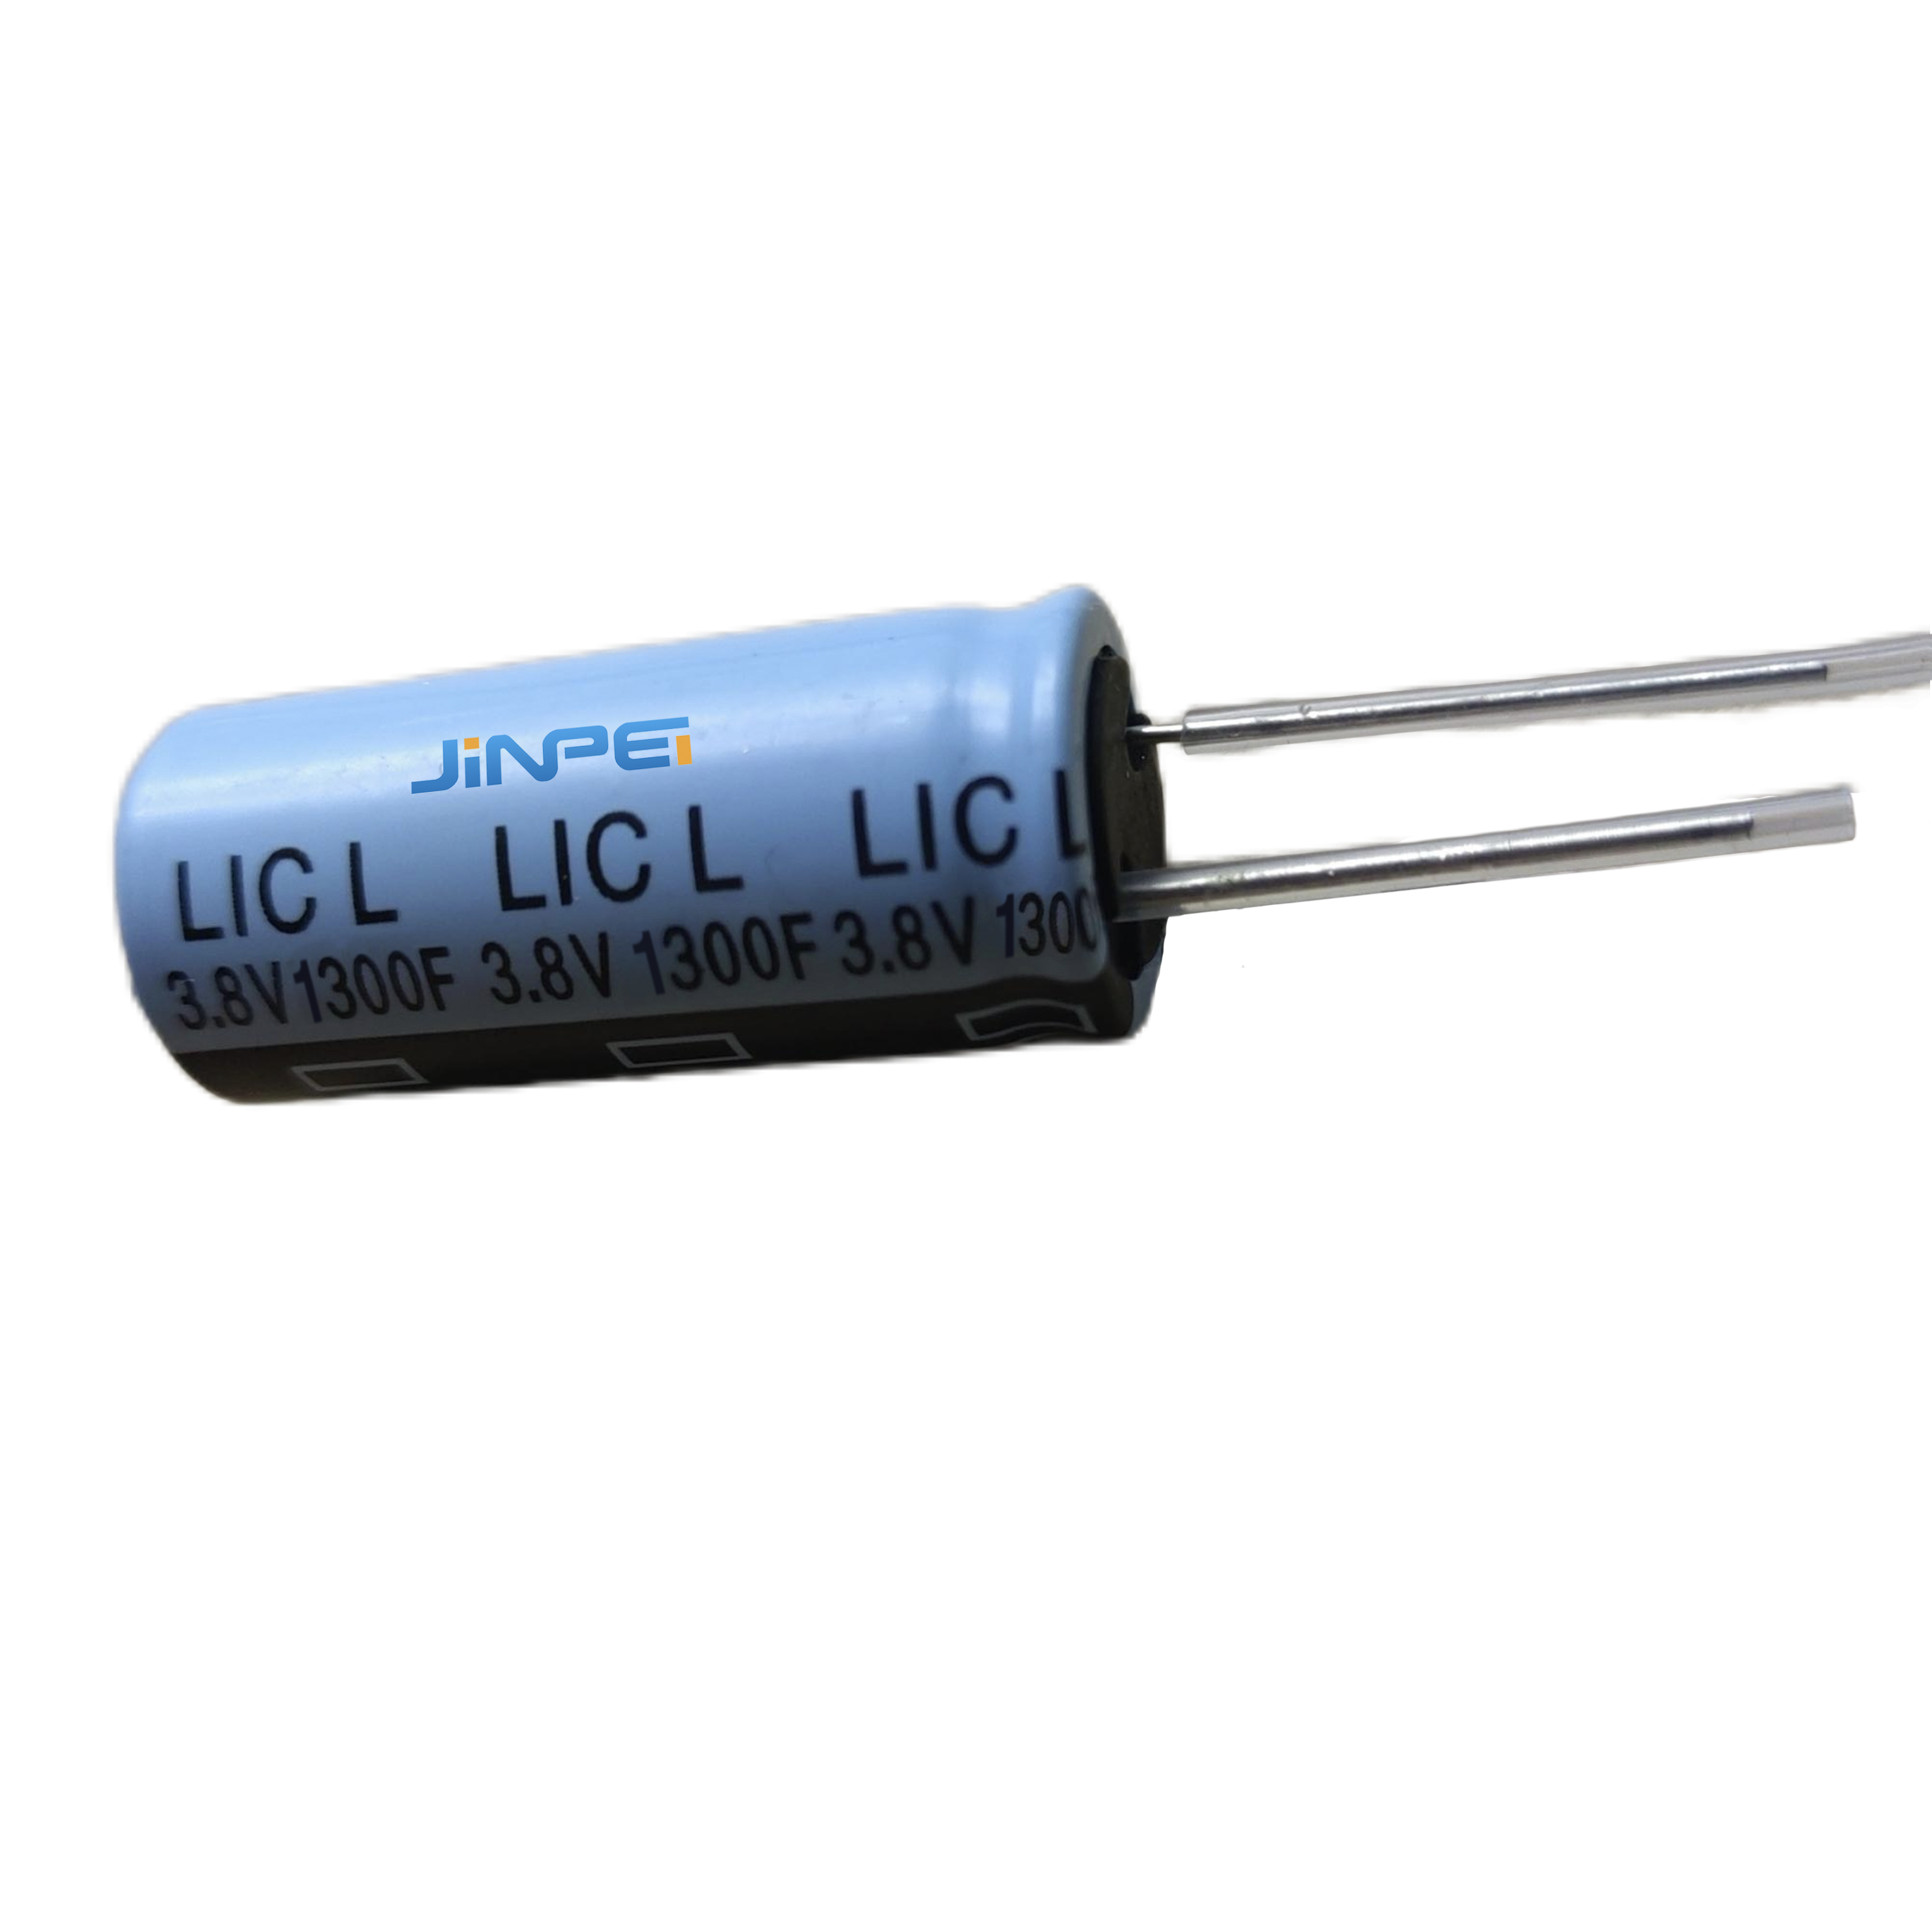 Radijalni olovni litij-ionski kondenzator LIC 1300F